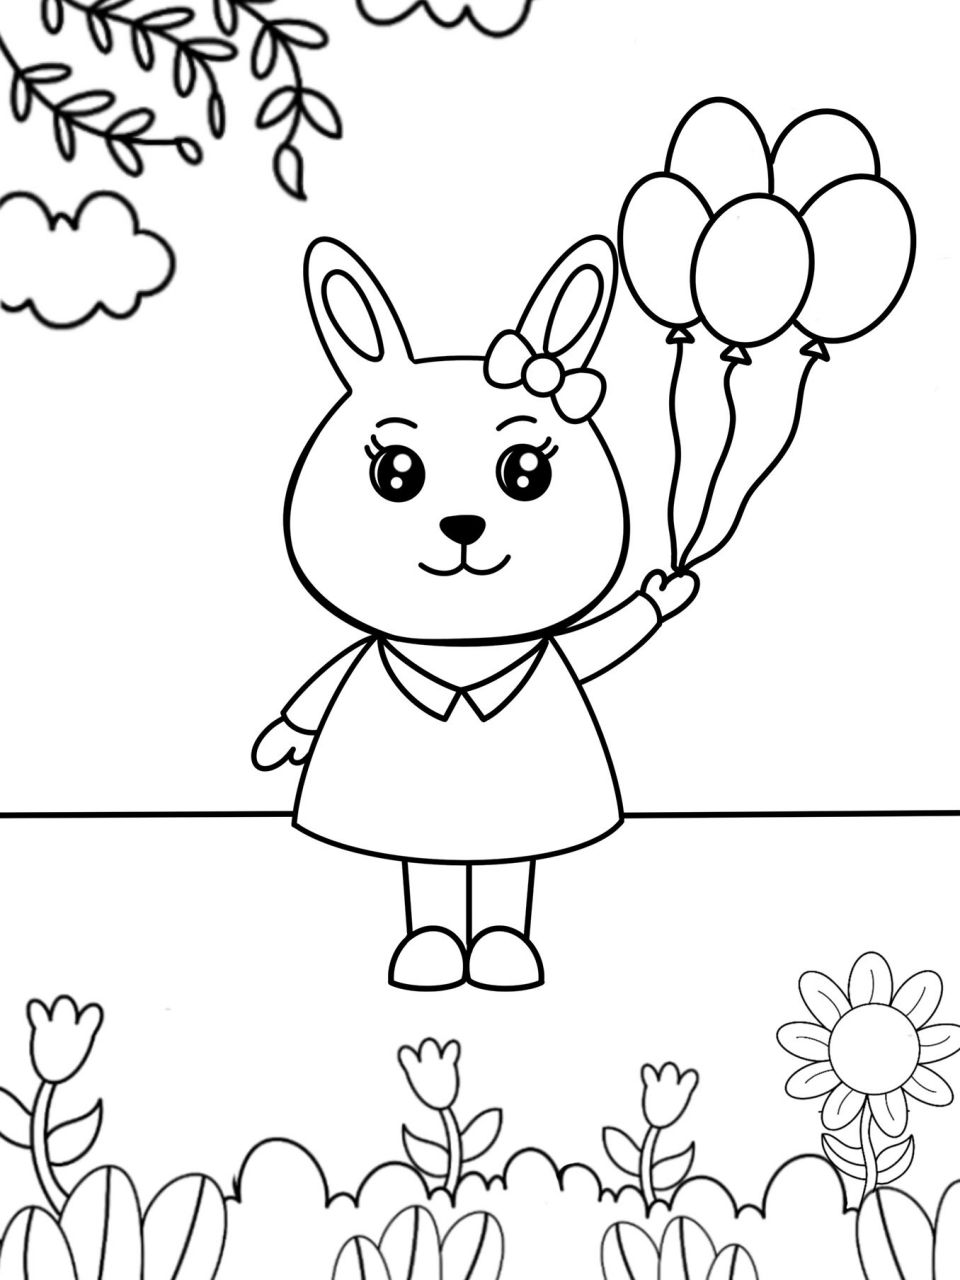 可爱的小兔子儿童画 创意画 简单 9615线稿 